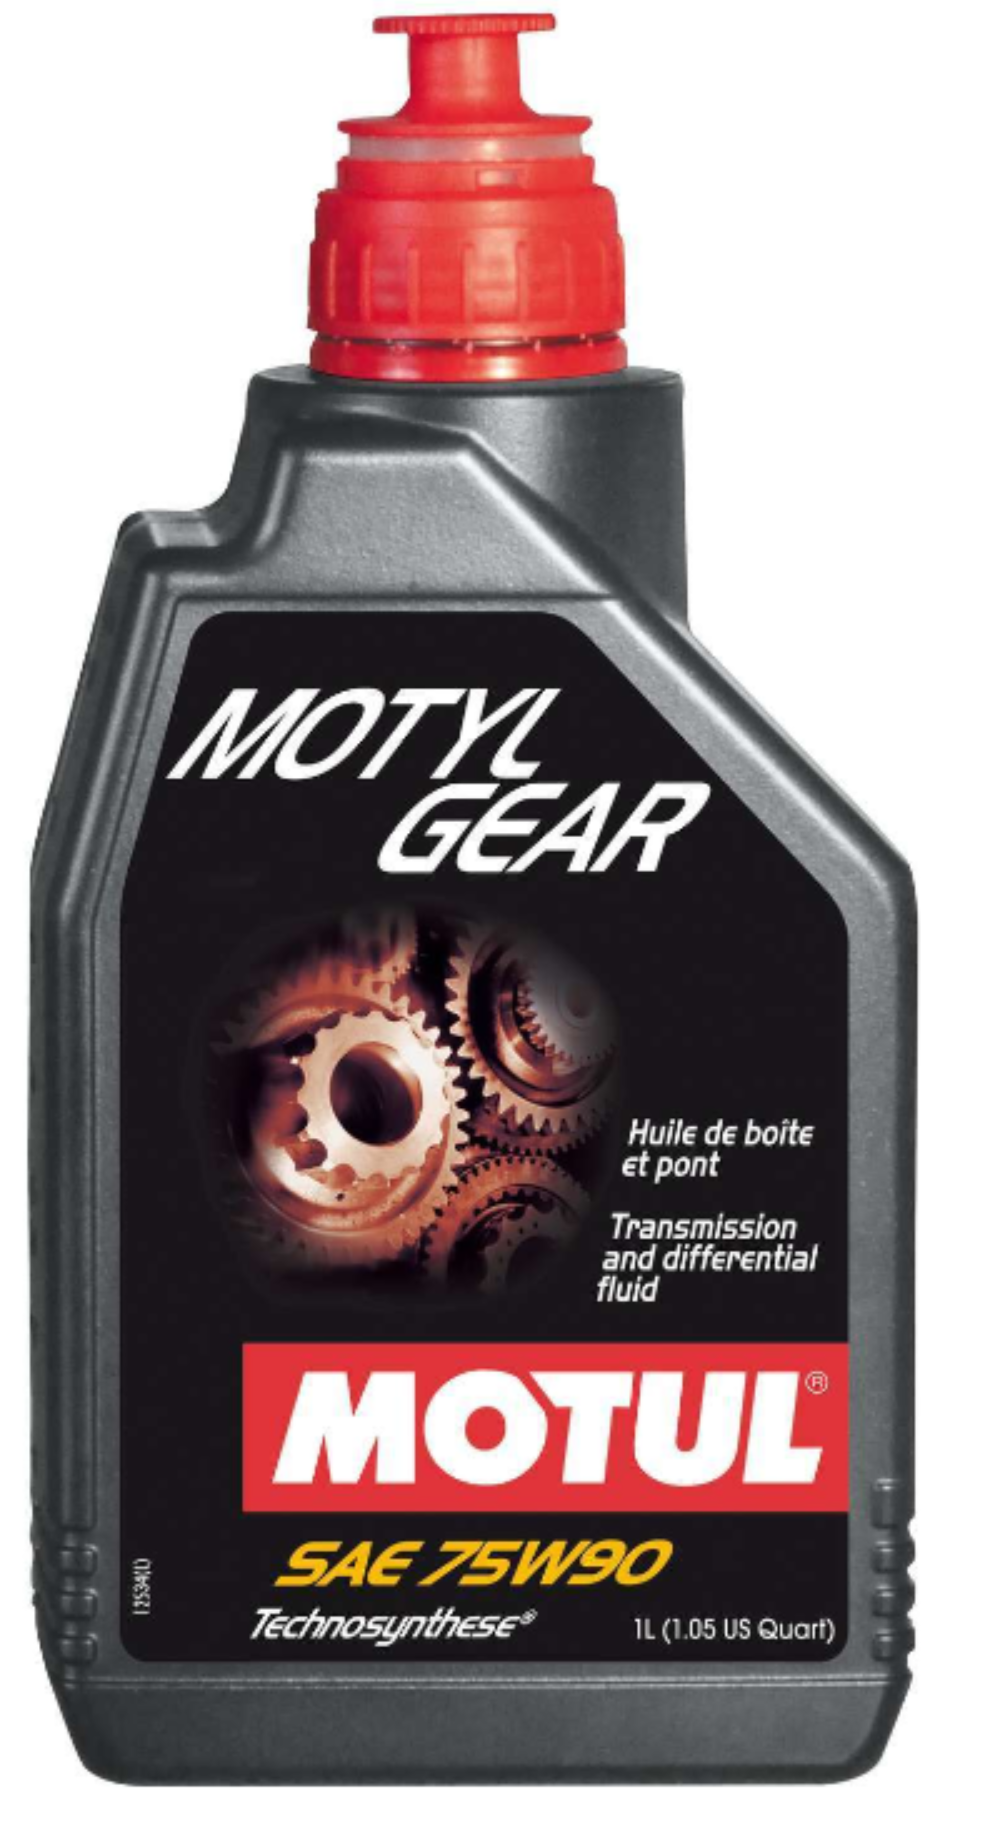 Motul Motylgear (GL-4/5) 75W-90 Gear Oil - 1 Liter